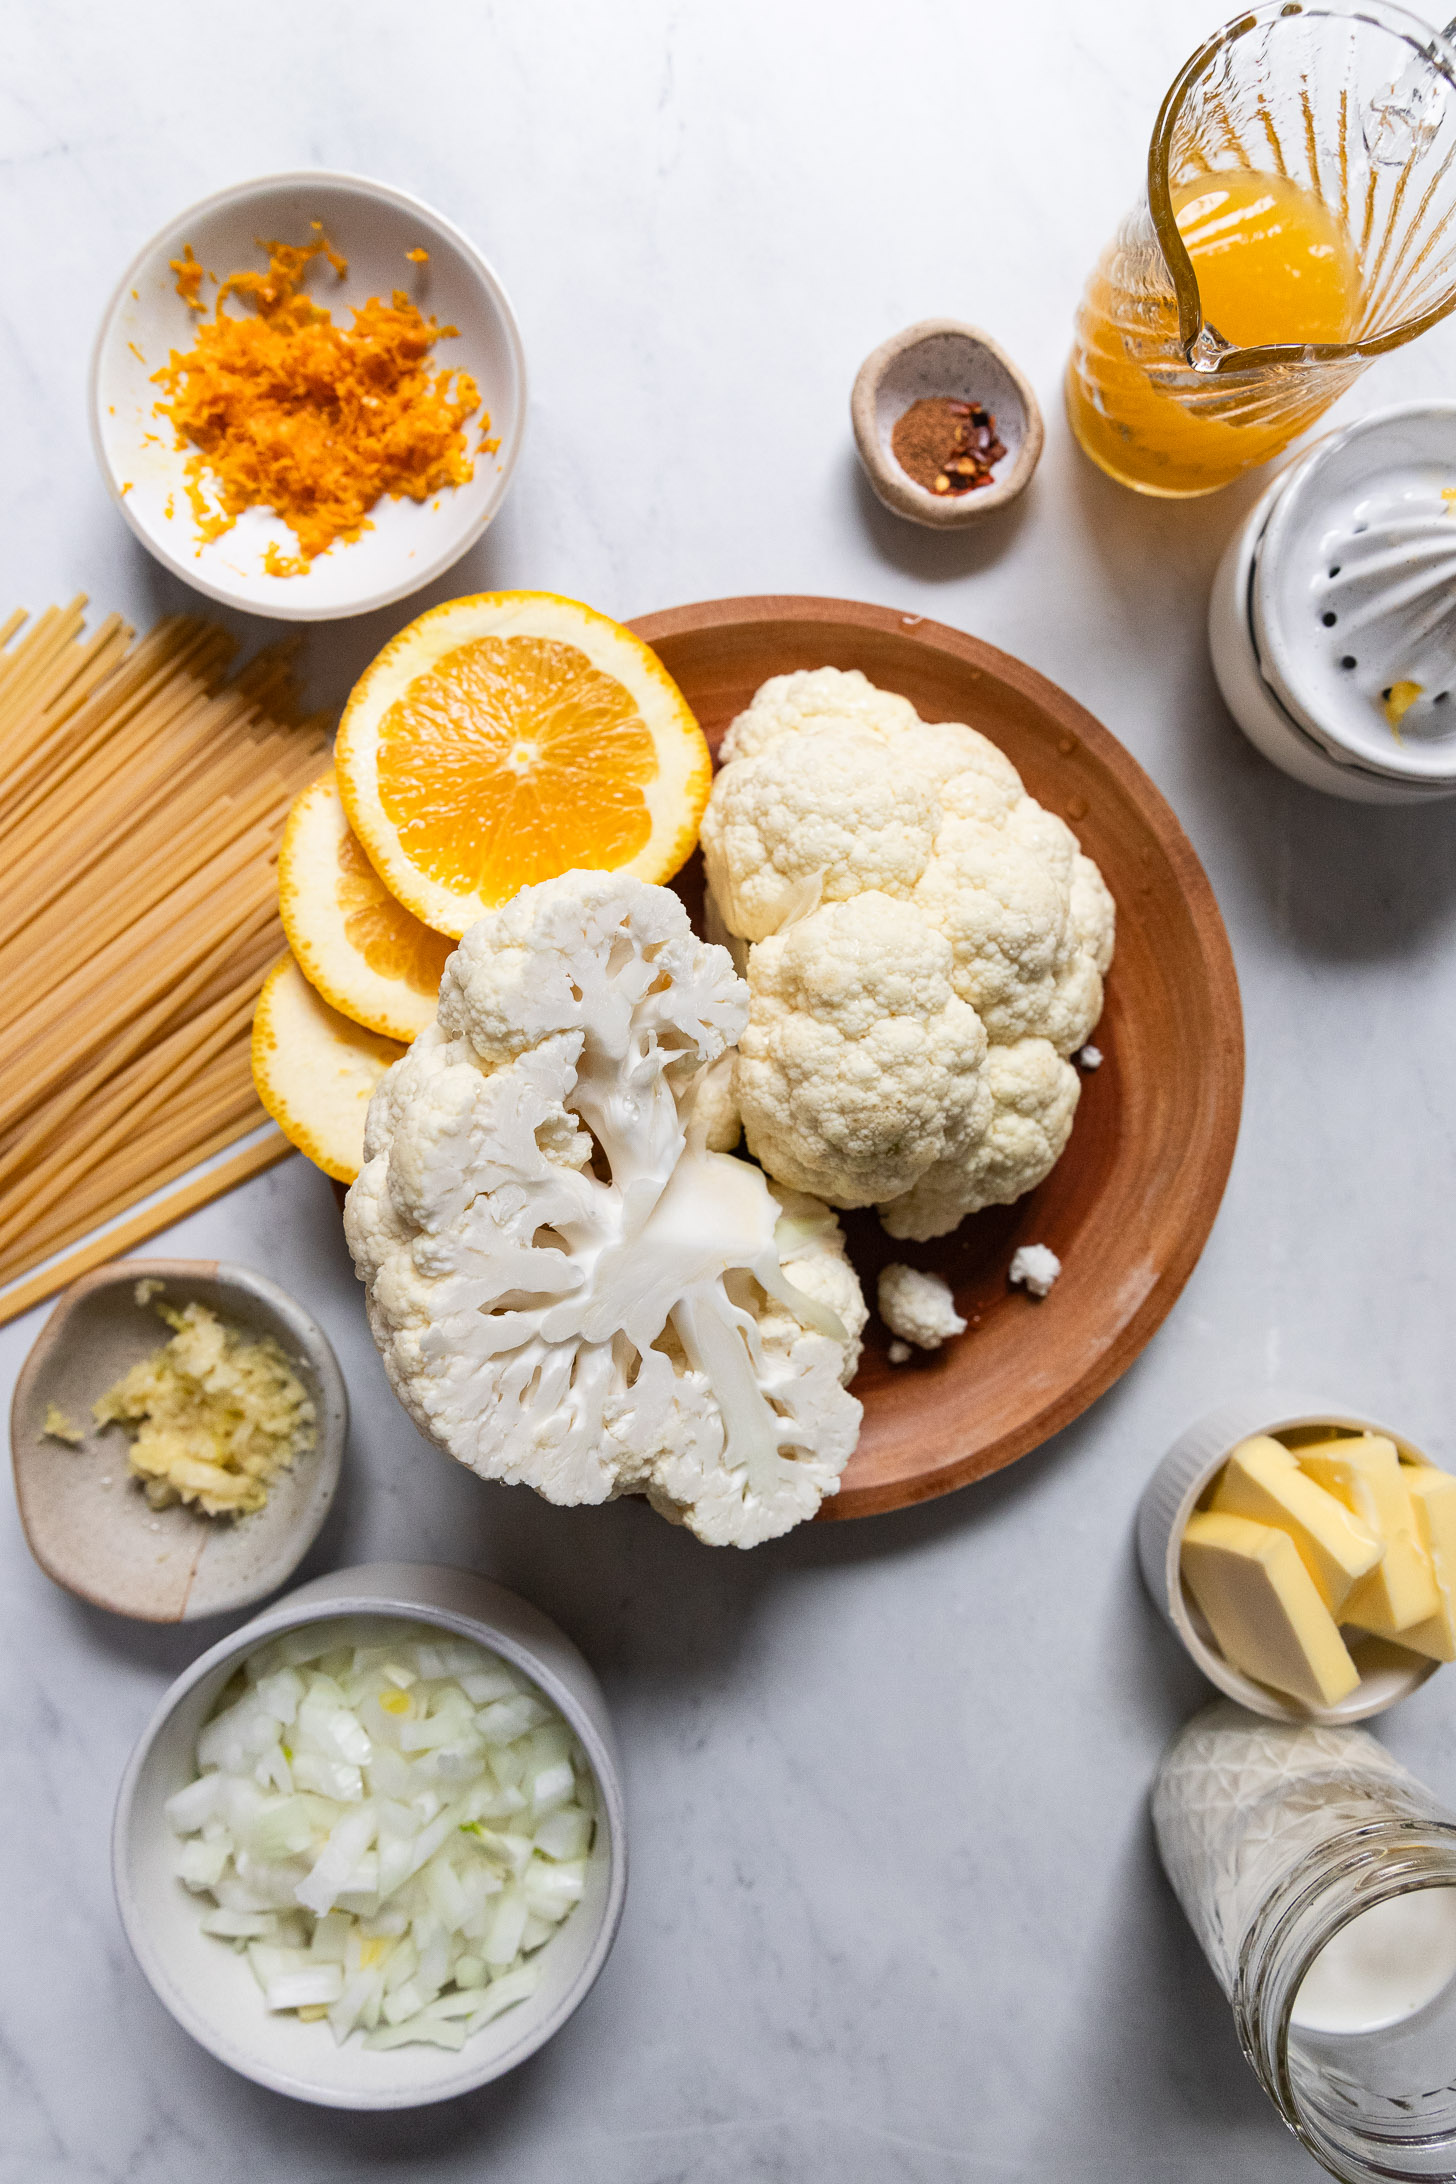 Cauliflower head cut in half with orange slices next to dried pasta, orange zest, onion, and jars of liquids.